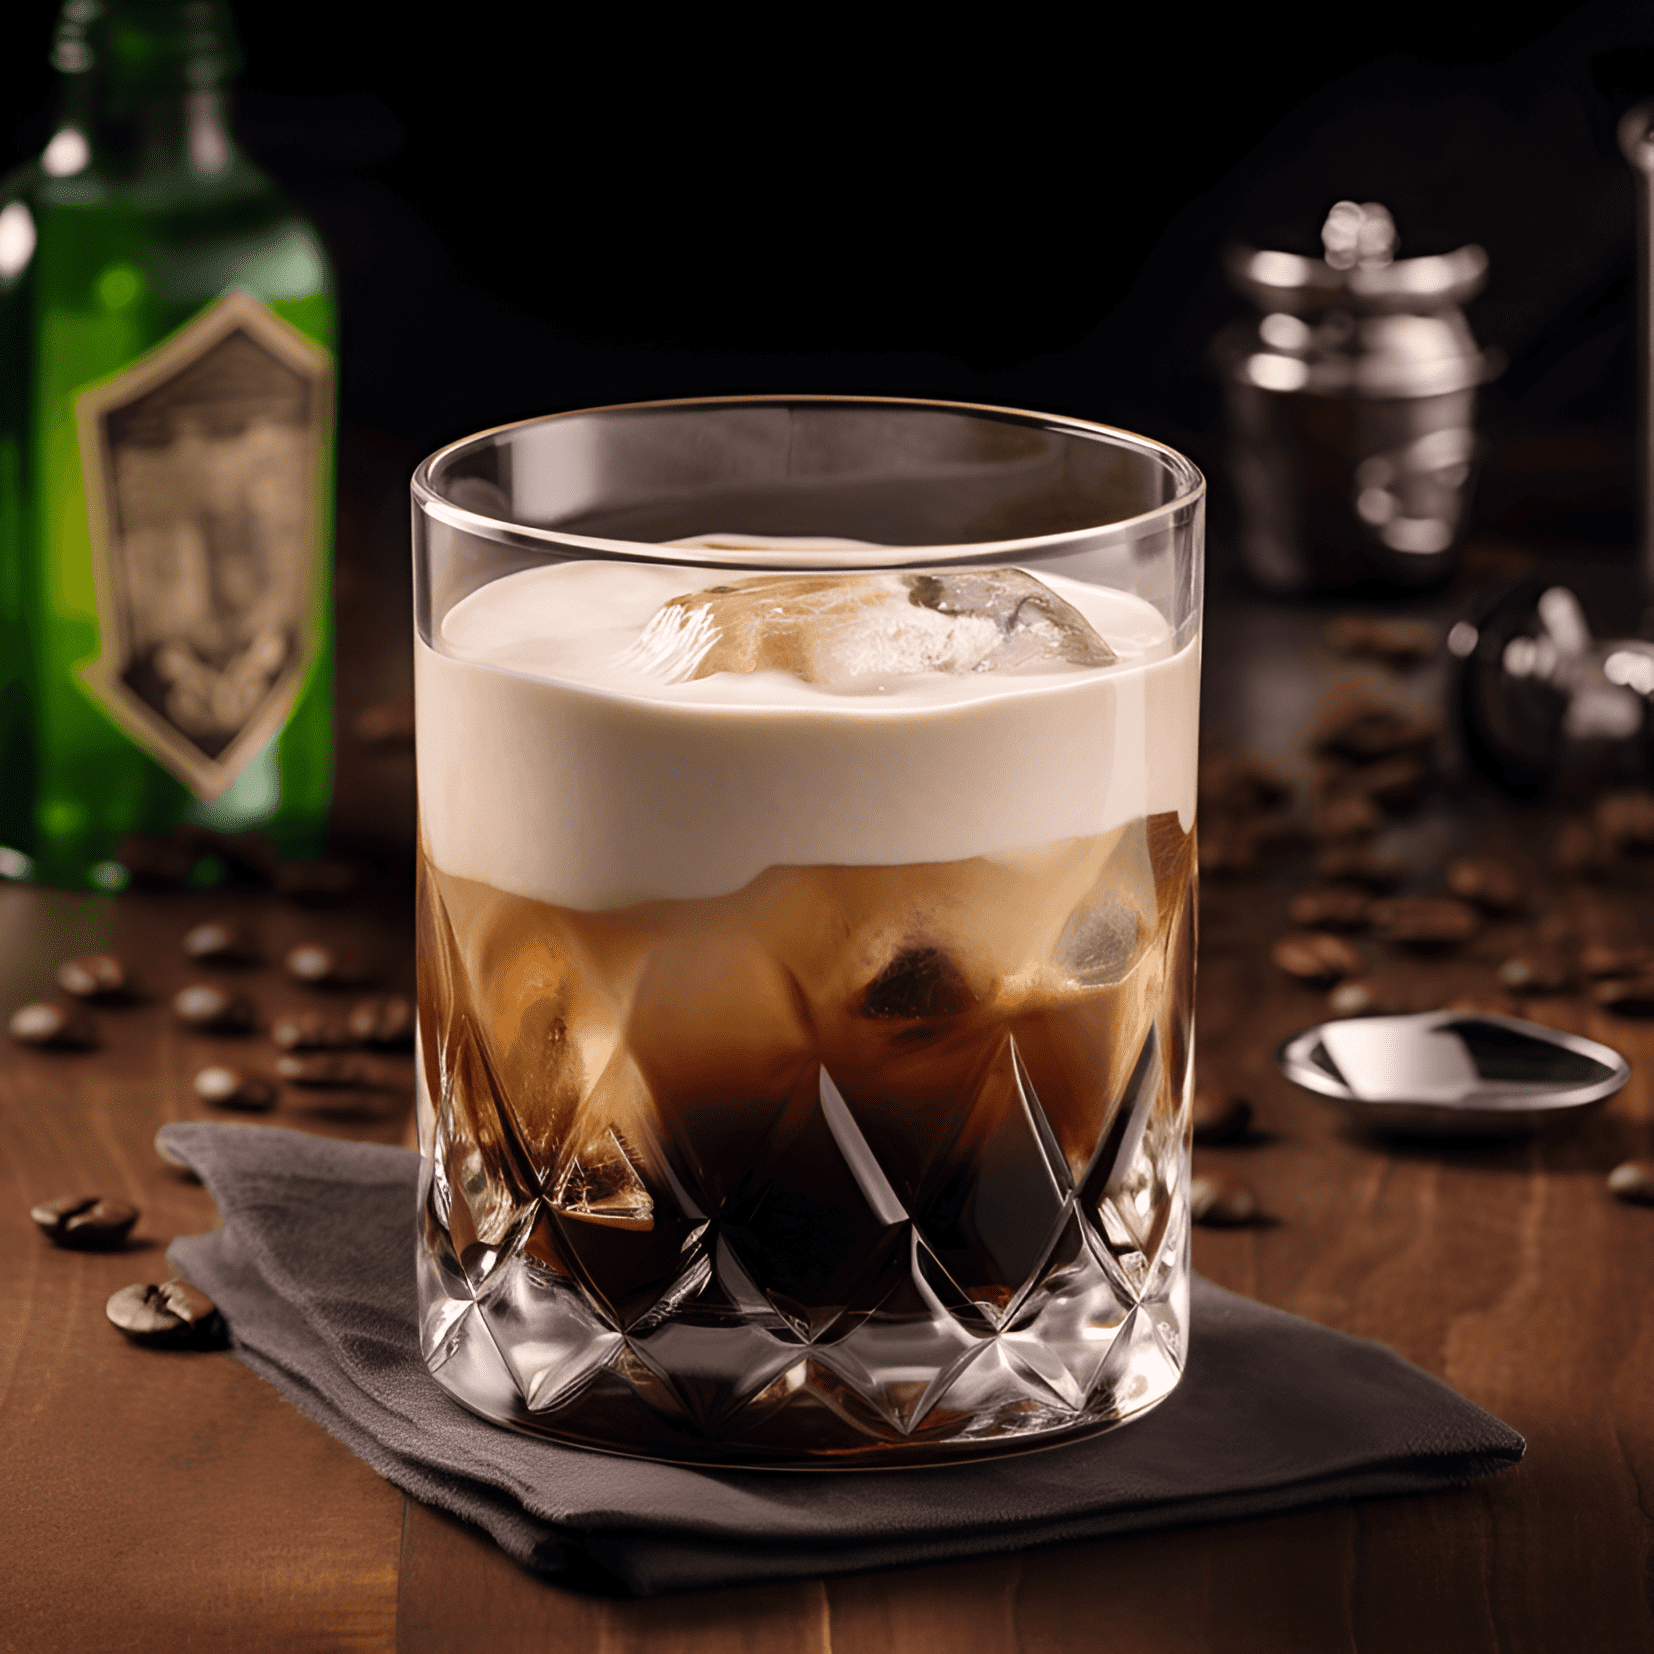 Smith and Wesson Cóctel Receta - El cóctel Smith and Wesson tiene una textura rica y cremosa con un fuerte sabor a café, seguido de una sutil dulzura del Irish cream. El vodka agrega un poco de fuerza, lo que lo convierte en una bebida bien equilibrada y satisfactoria.